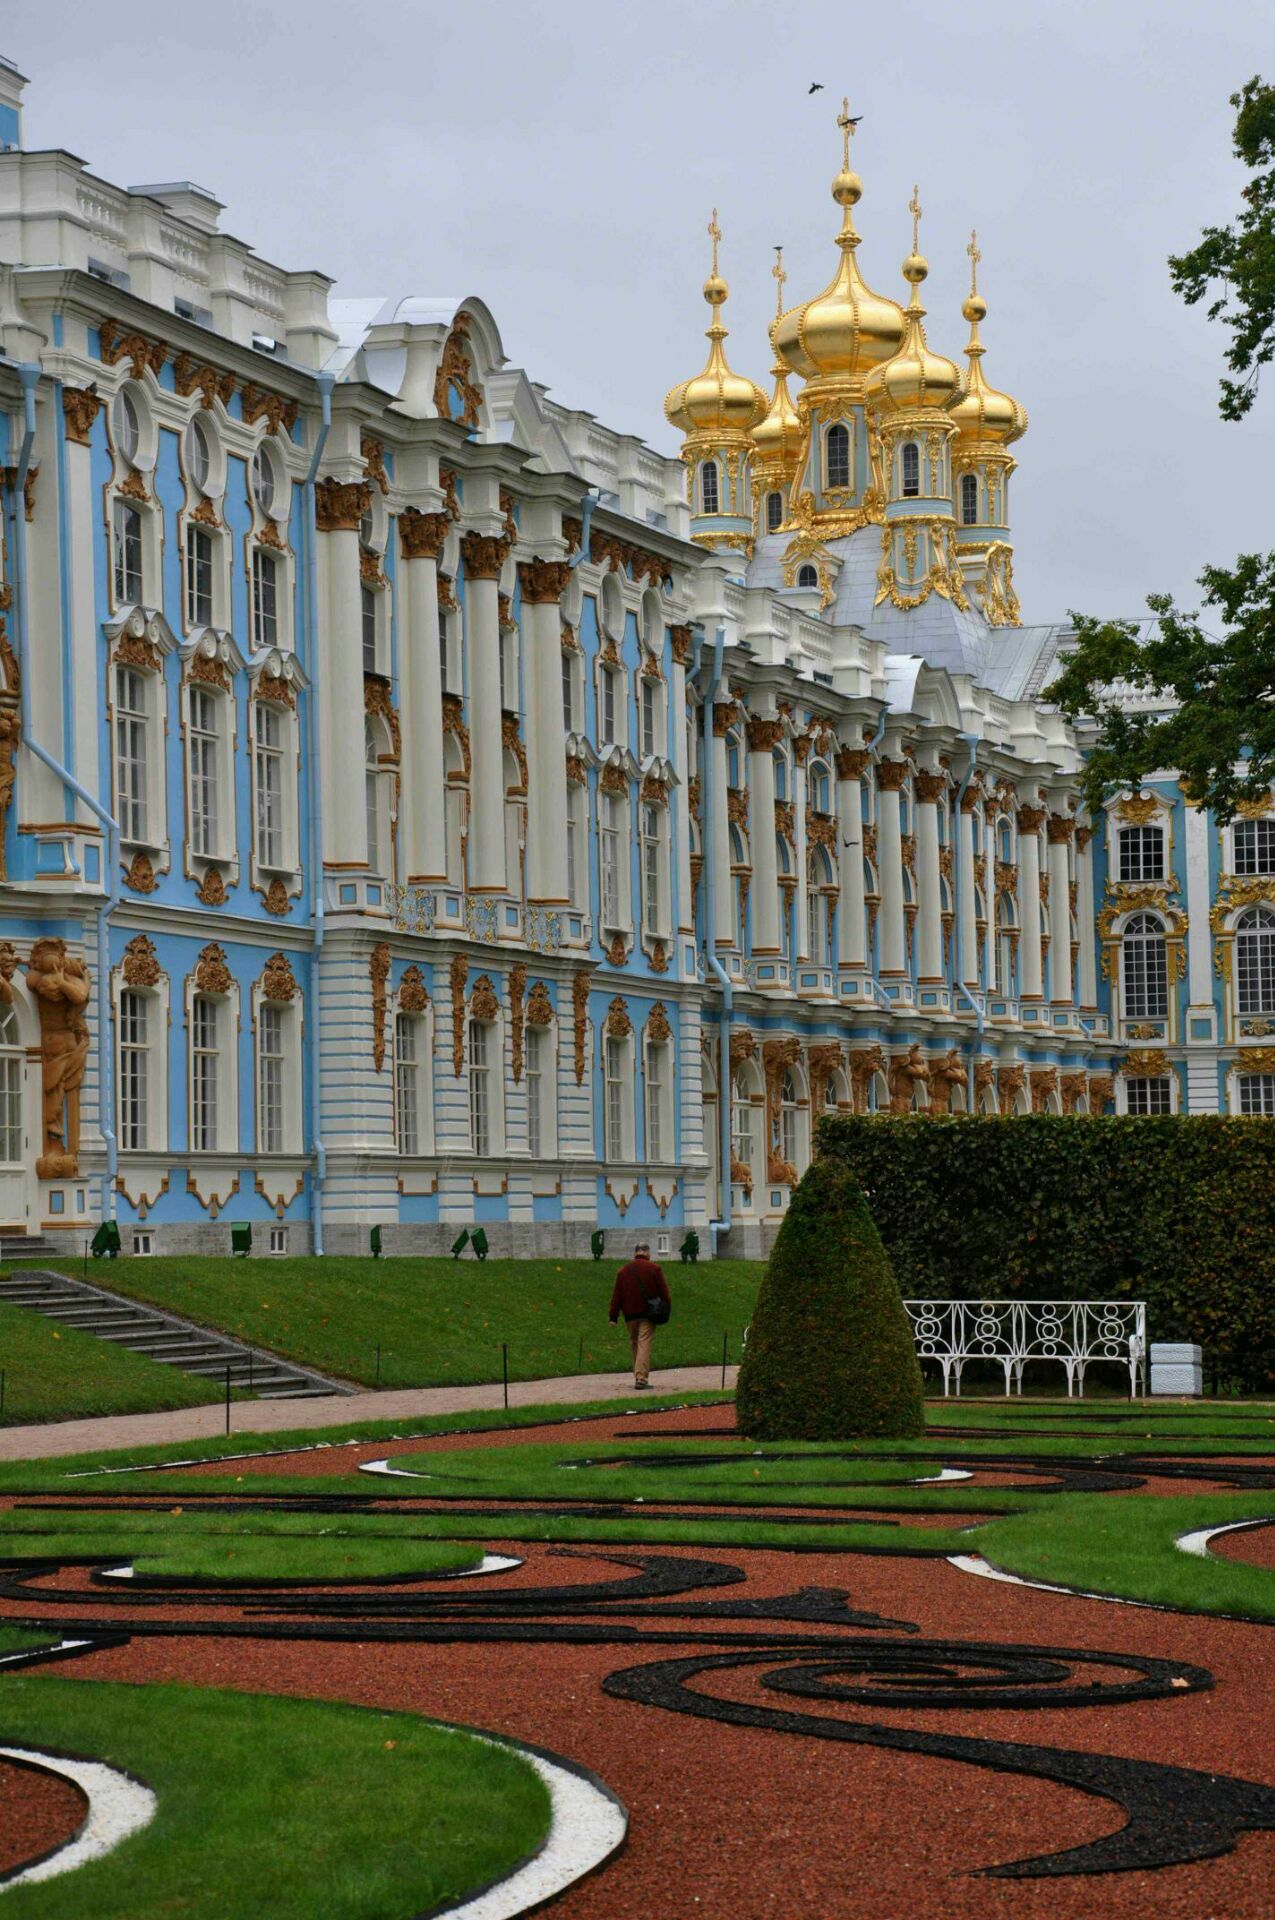 叶卡捷琳娜宫（The Catherine Palace）又称凯瑟琳宫，位于俄罗斯普希金市，建造于17